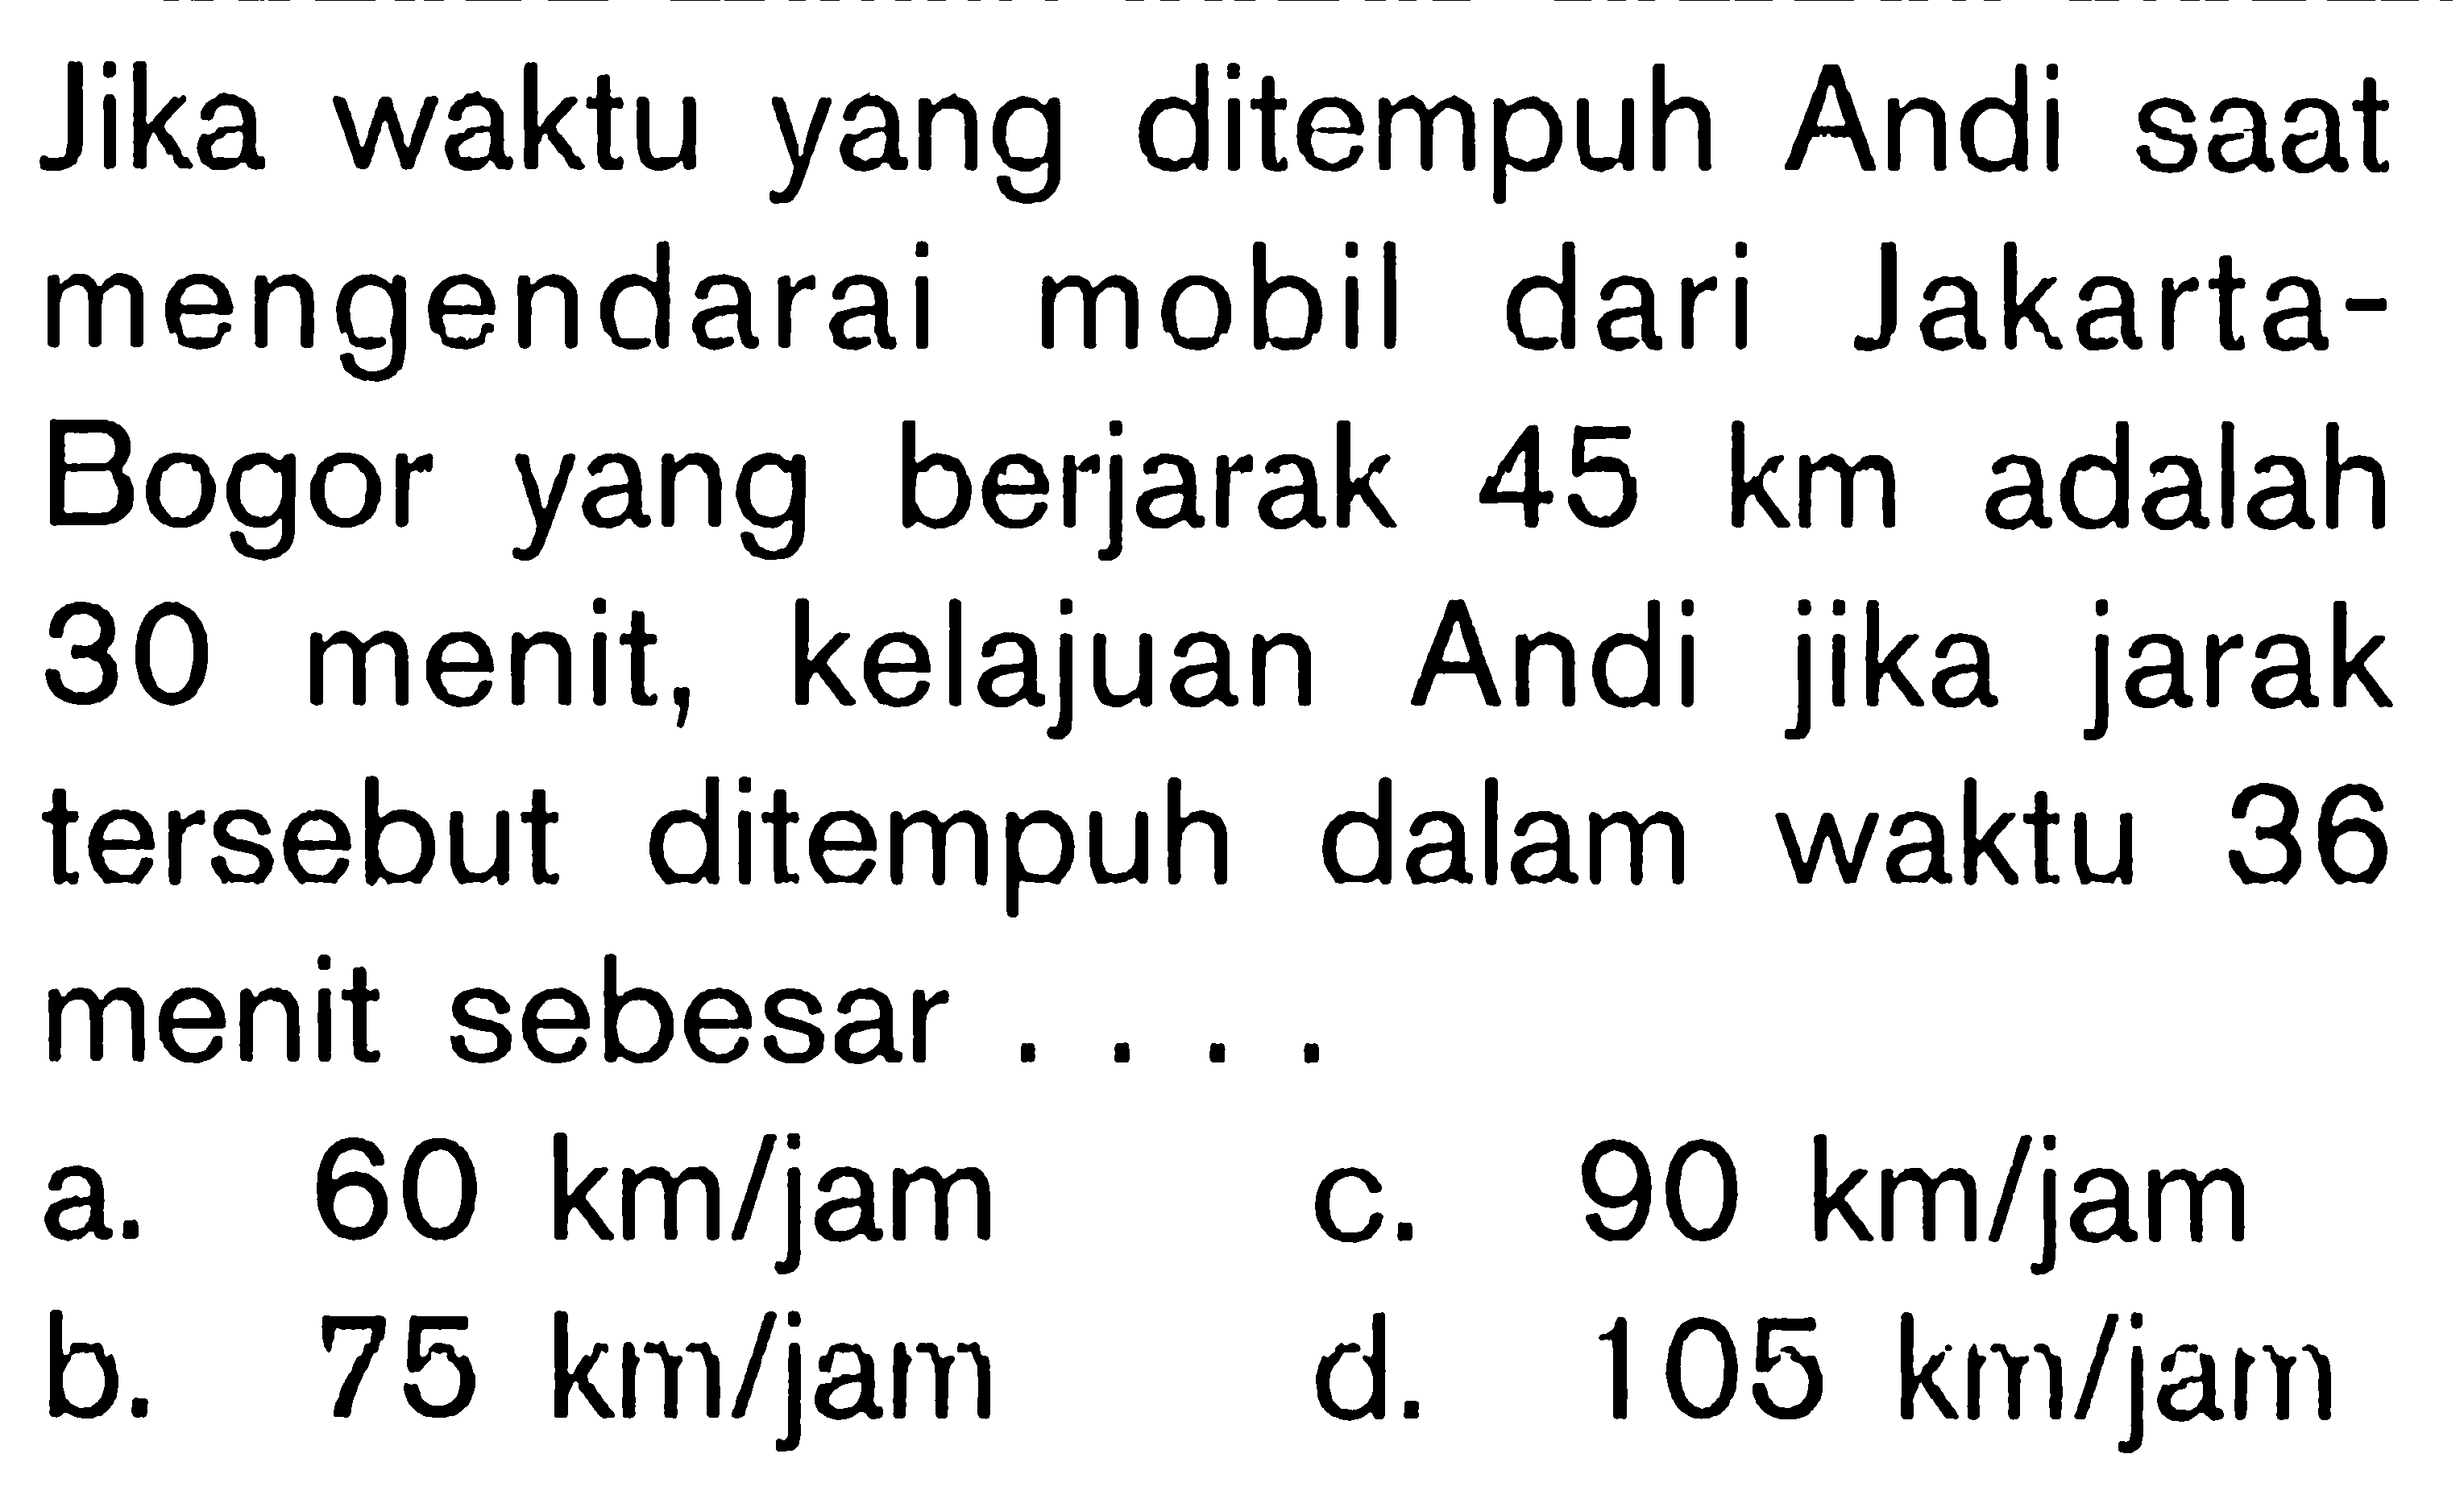 Jika waktu yang ditempuh Andi saat mengendarai mobil dari Jakarta-Bogor yang berjarak  45 km  adalah 30 menit, kelajuan Andi jika jarak tersebut ditempuh dalam waktu 36 menit sebesar....